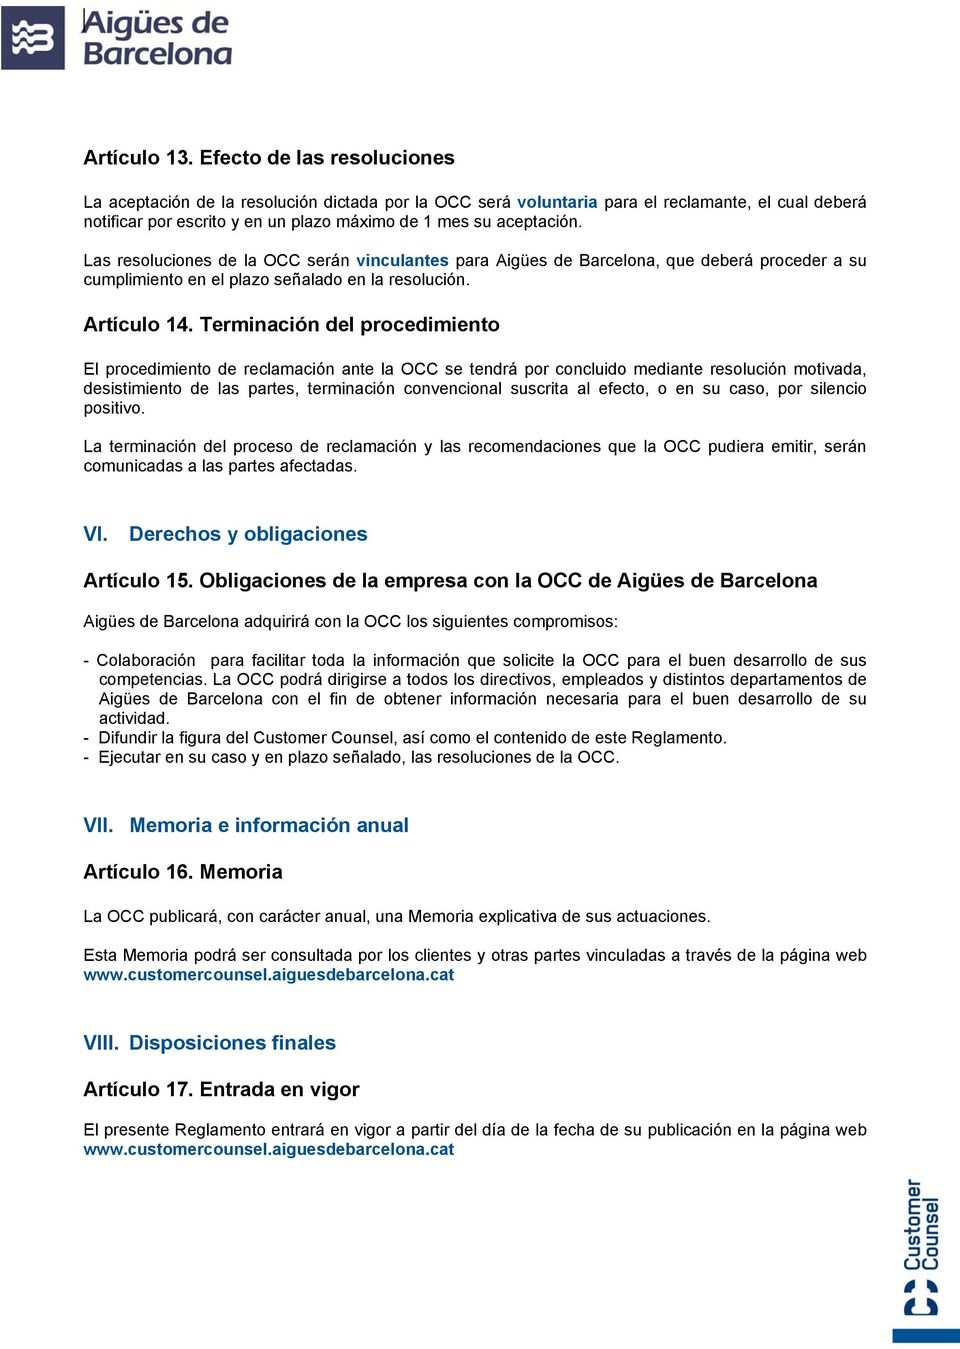 Las resoluciones de la OCC serán vinculantes para Aigües de Barcelona, que deberá proceder a su cumplimiento en el plazo señalado en la resolución. Artículo 14.